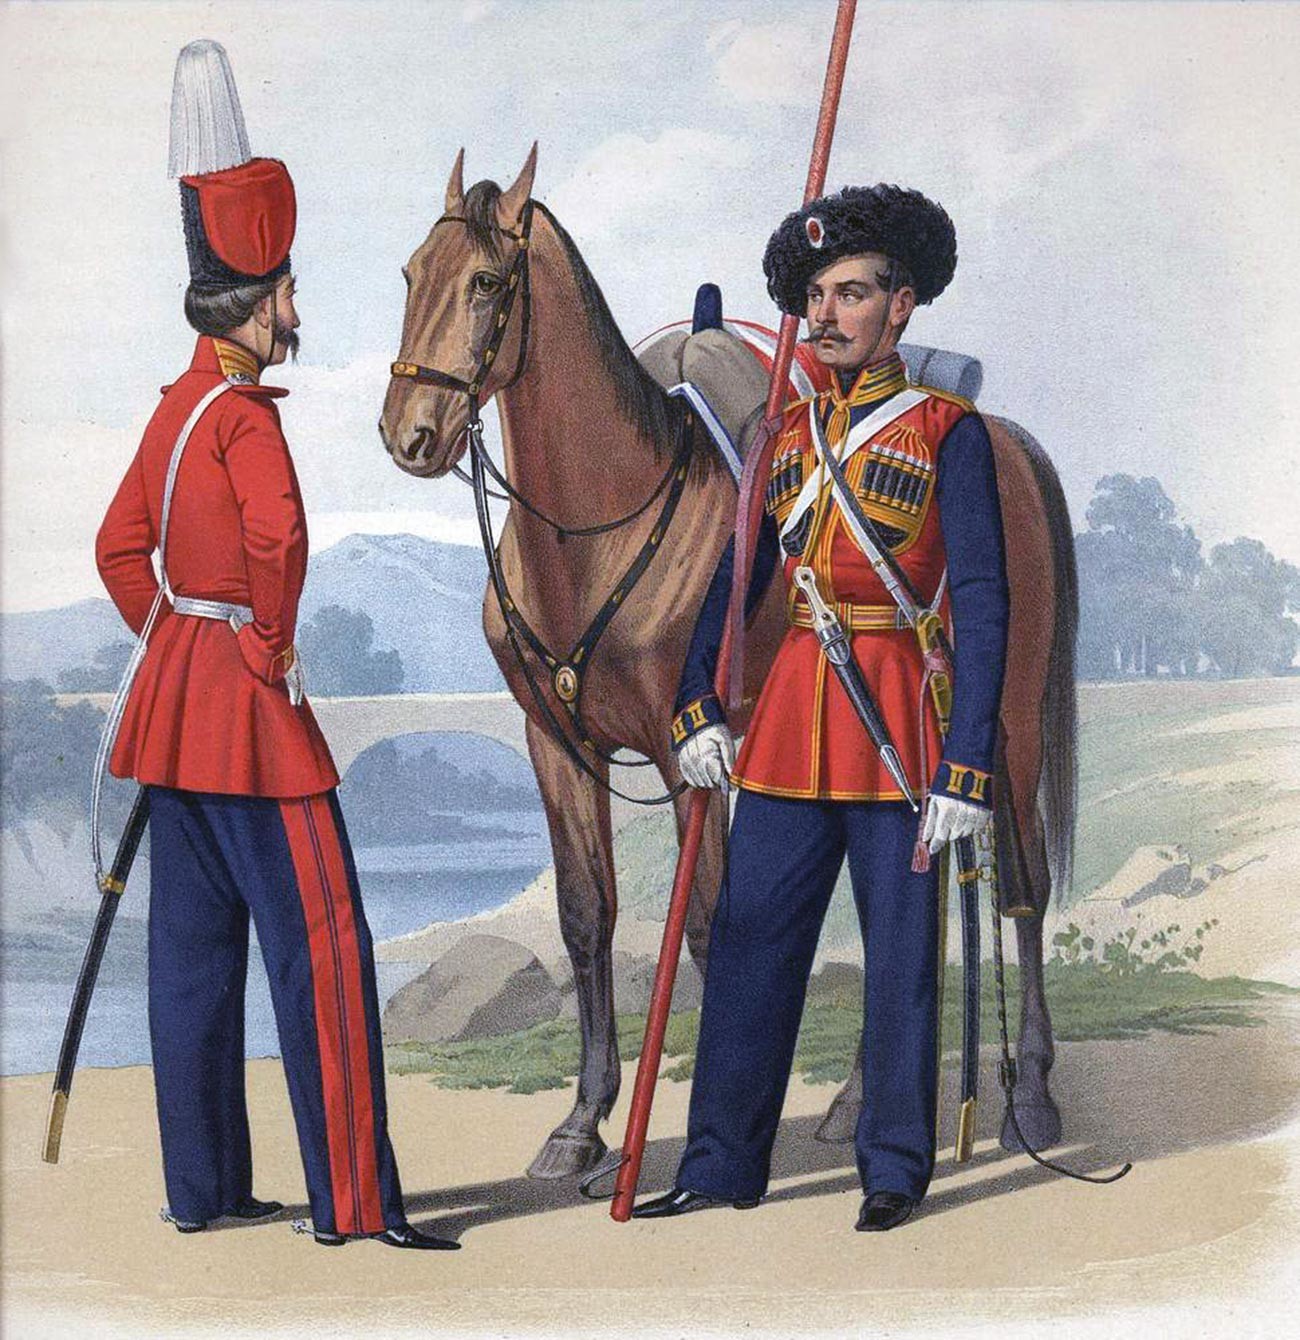 コサック部隊の兵士、1855年